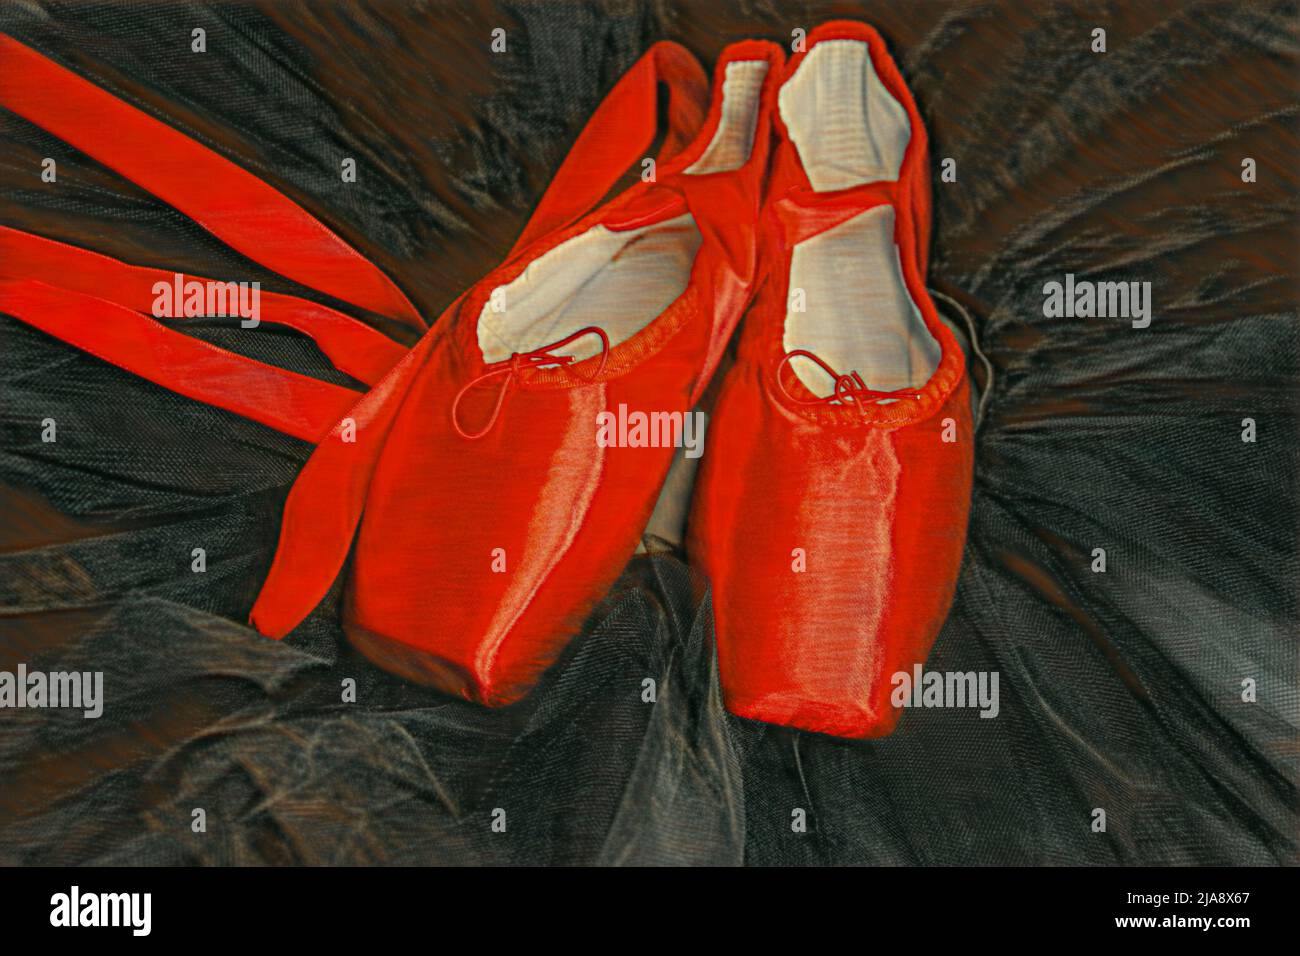 Rotes Ballett spitzenschuhe, die auf einem schwarzen Tutu ruhen. Stockfoto